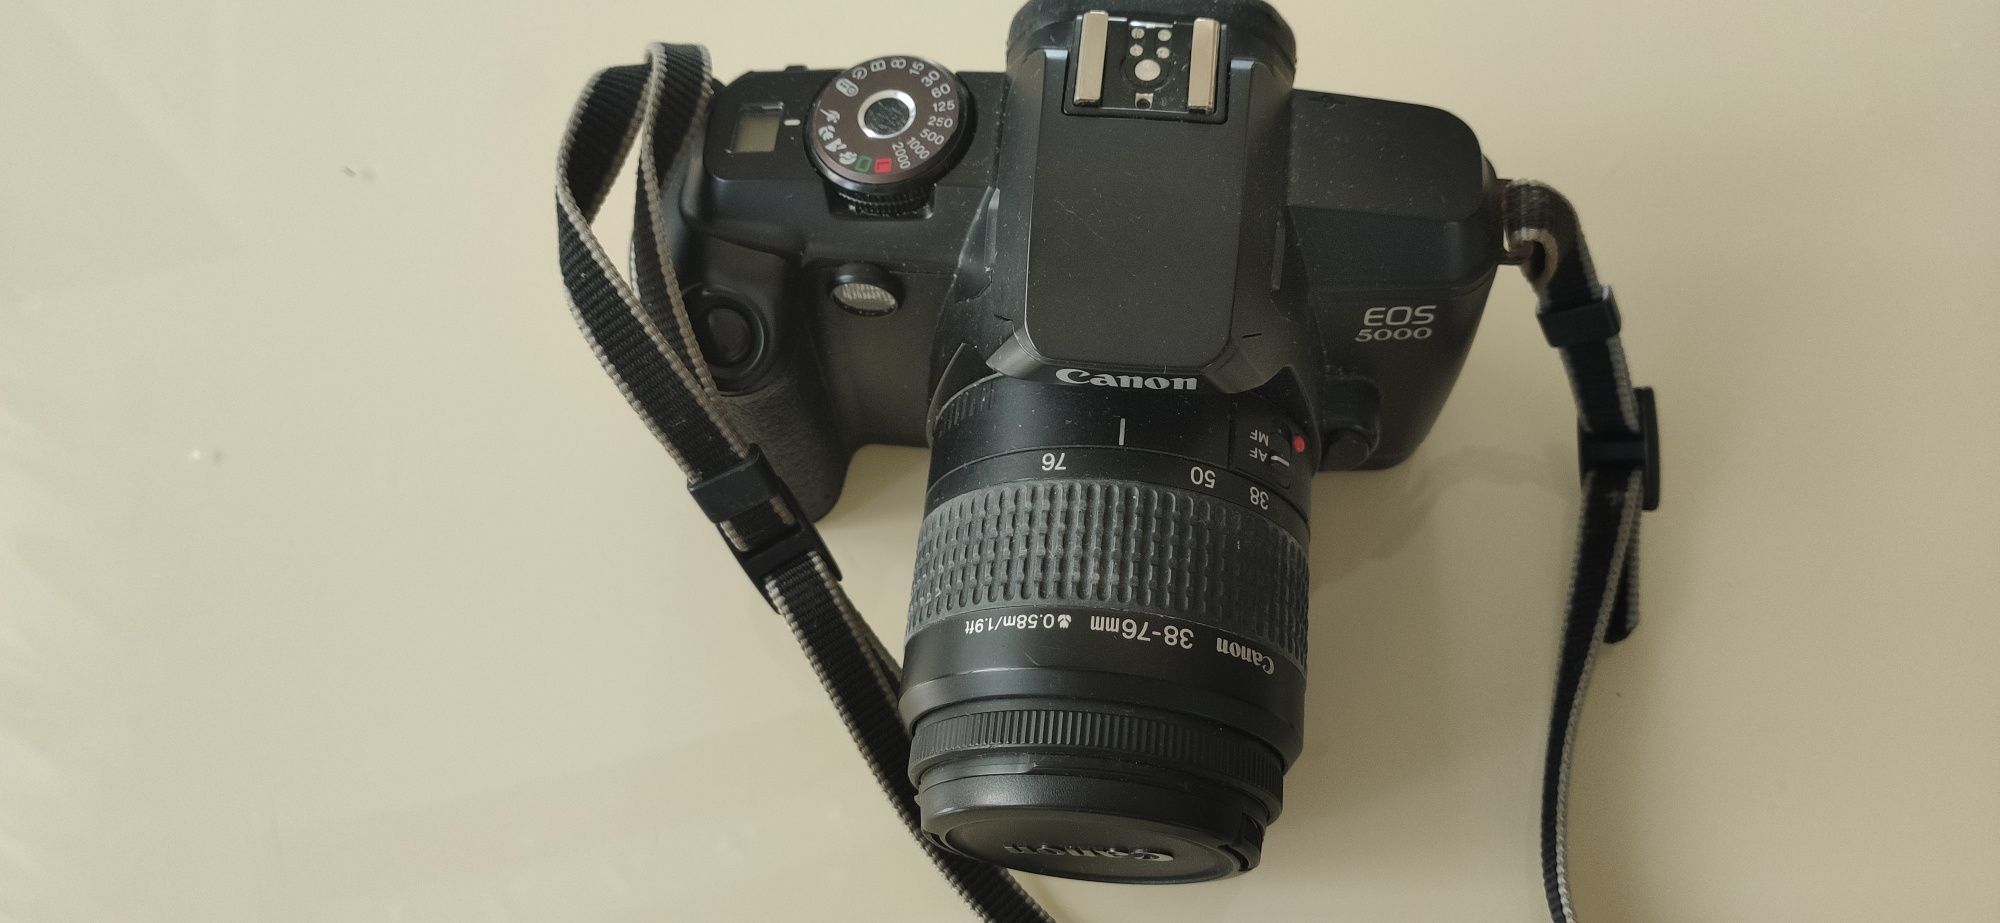 Canon EOS 5000 lustrzanka analogowa